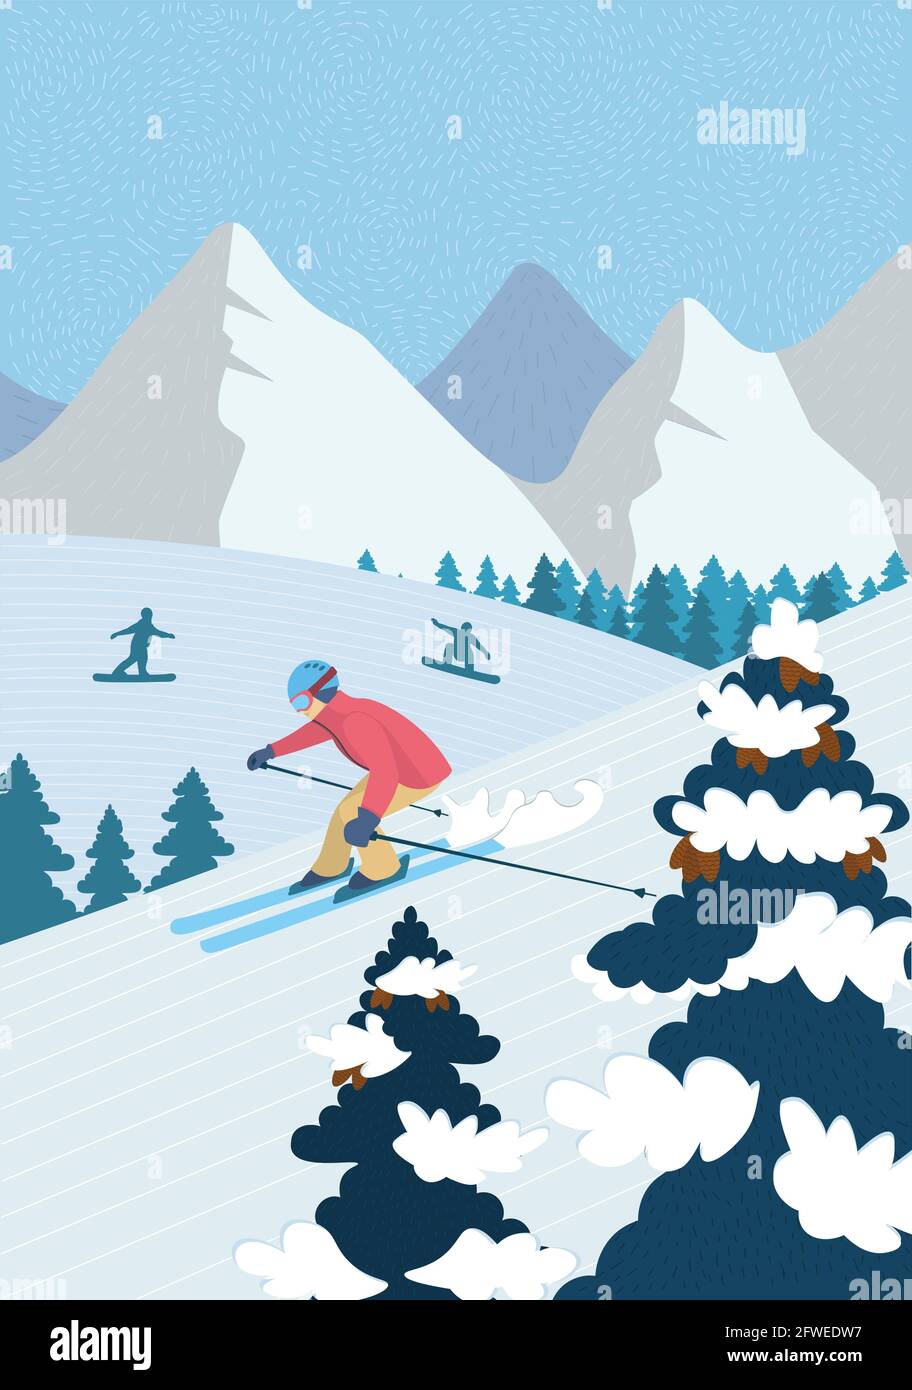 En hiver, vous pouvez pratiquer des activités récréatives dans les montagnes alpines.Ski de descente ski sur une pente enneigée.Les athlètes surfeurs des neiges font du snowboard.Sports de plein air dans la station de ski scénario bannière Illustration de Vecteur